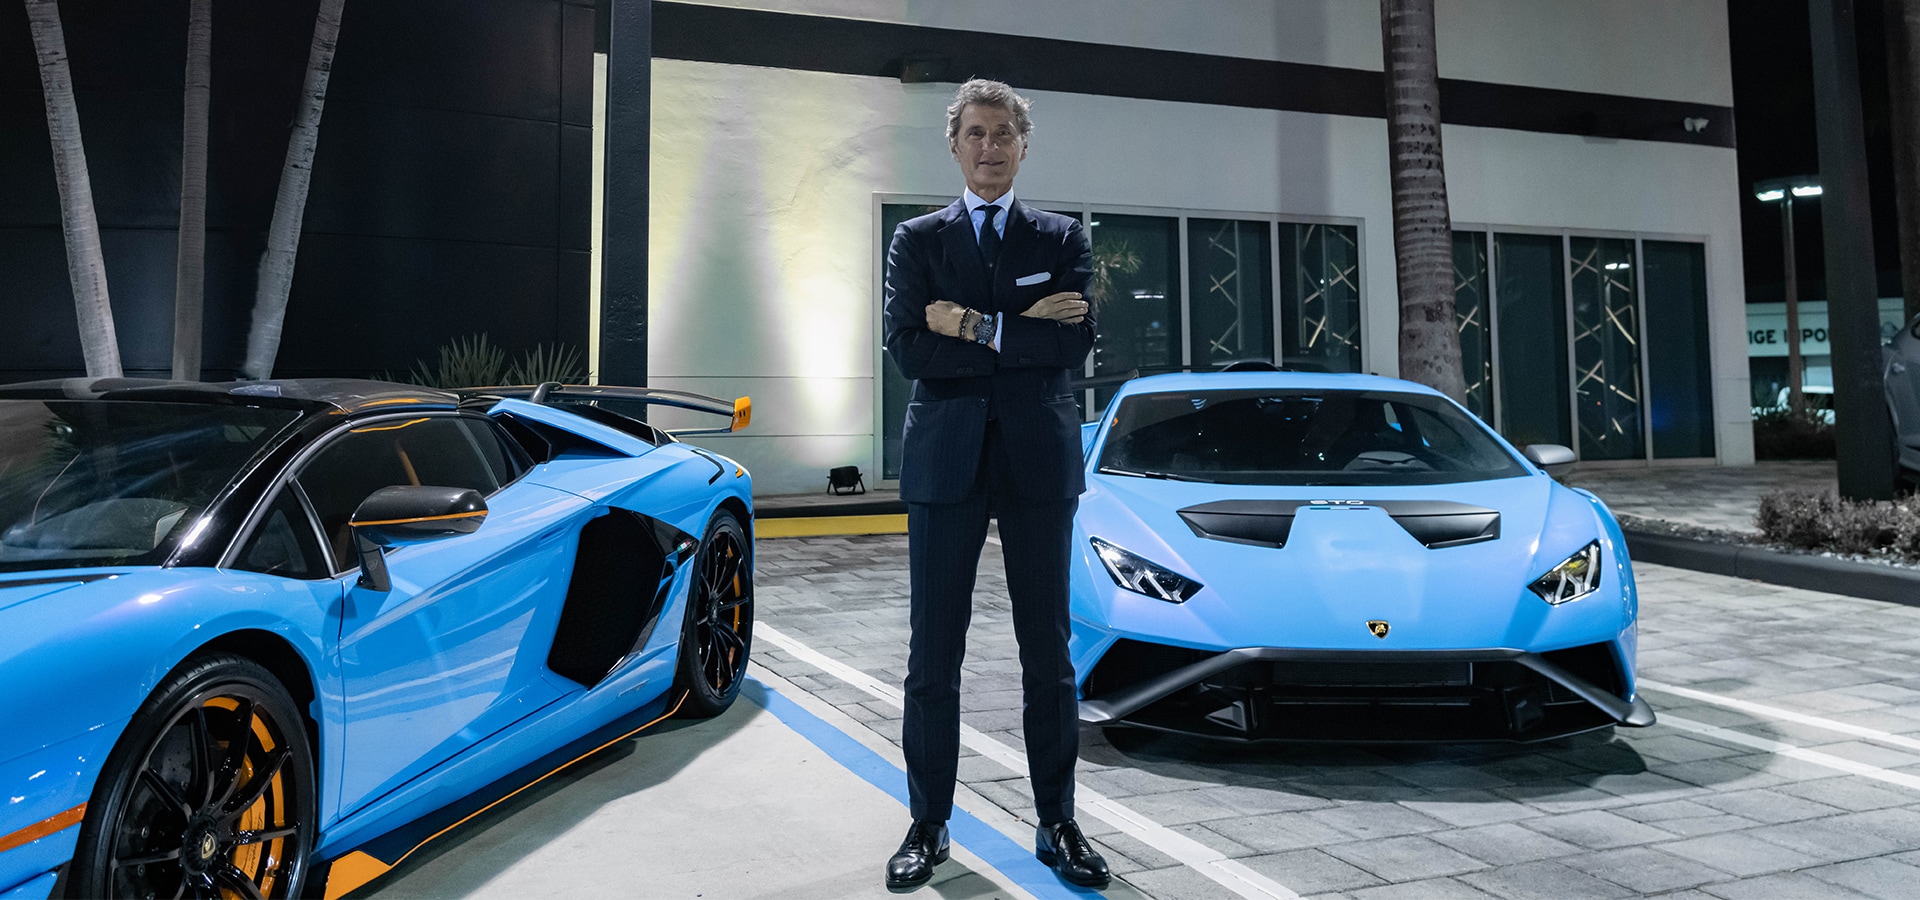 Lamborghini Miami: a new design for the showroom